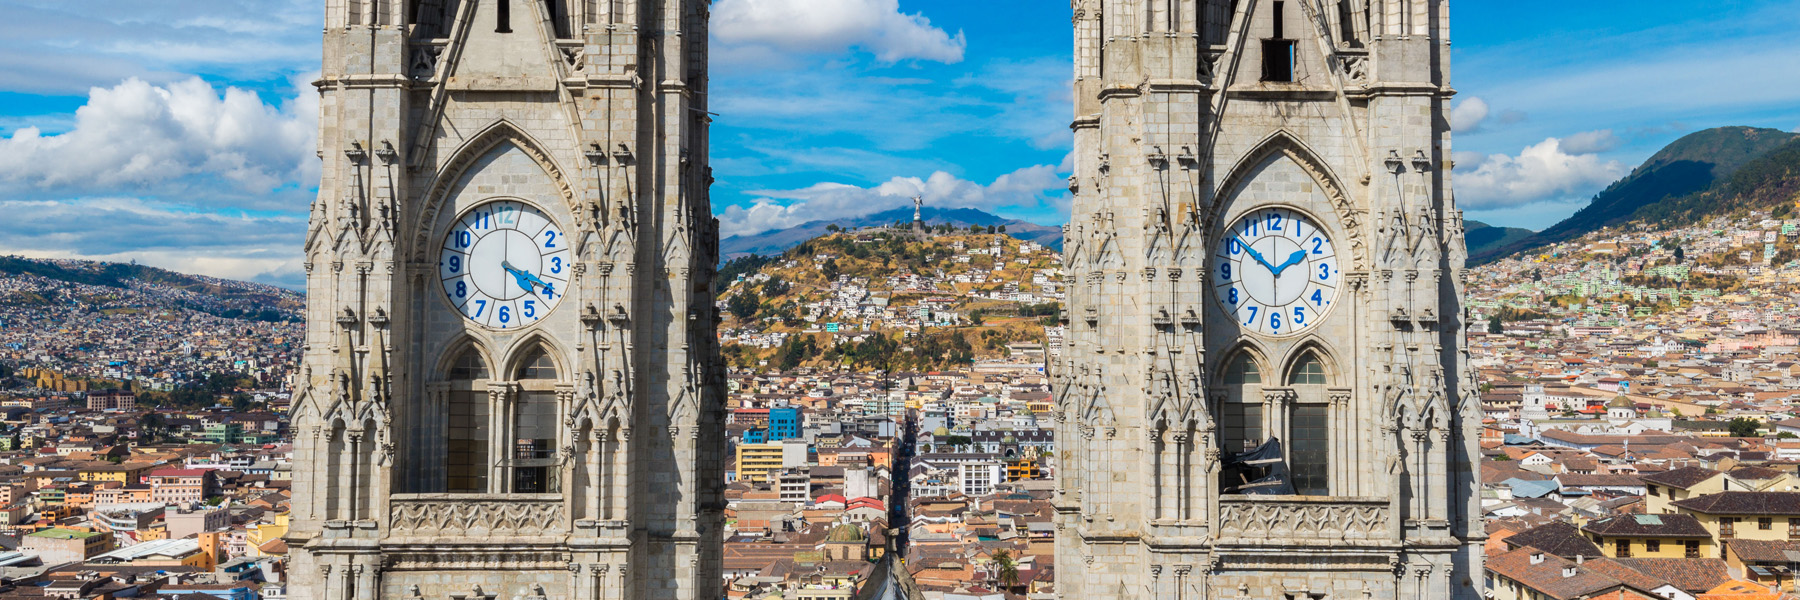 Quito-IES